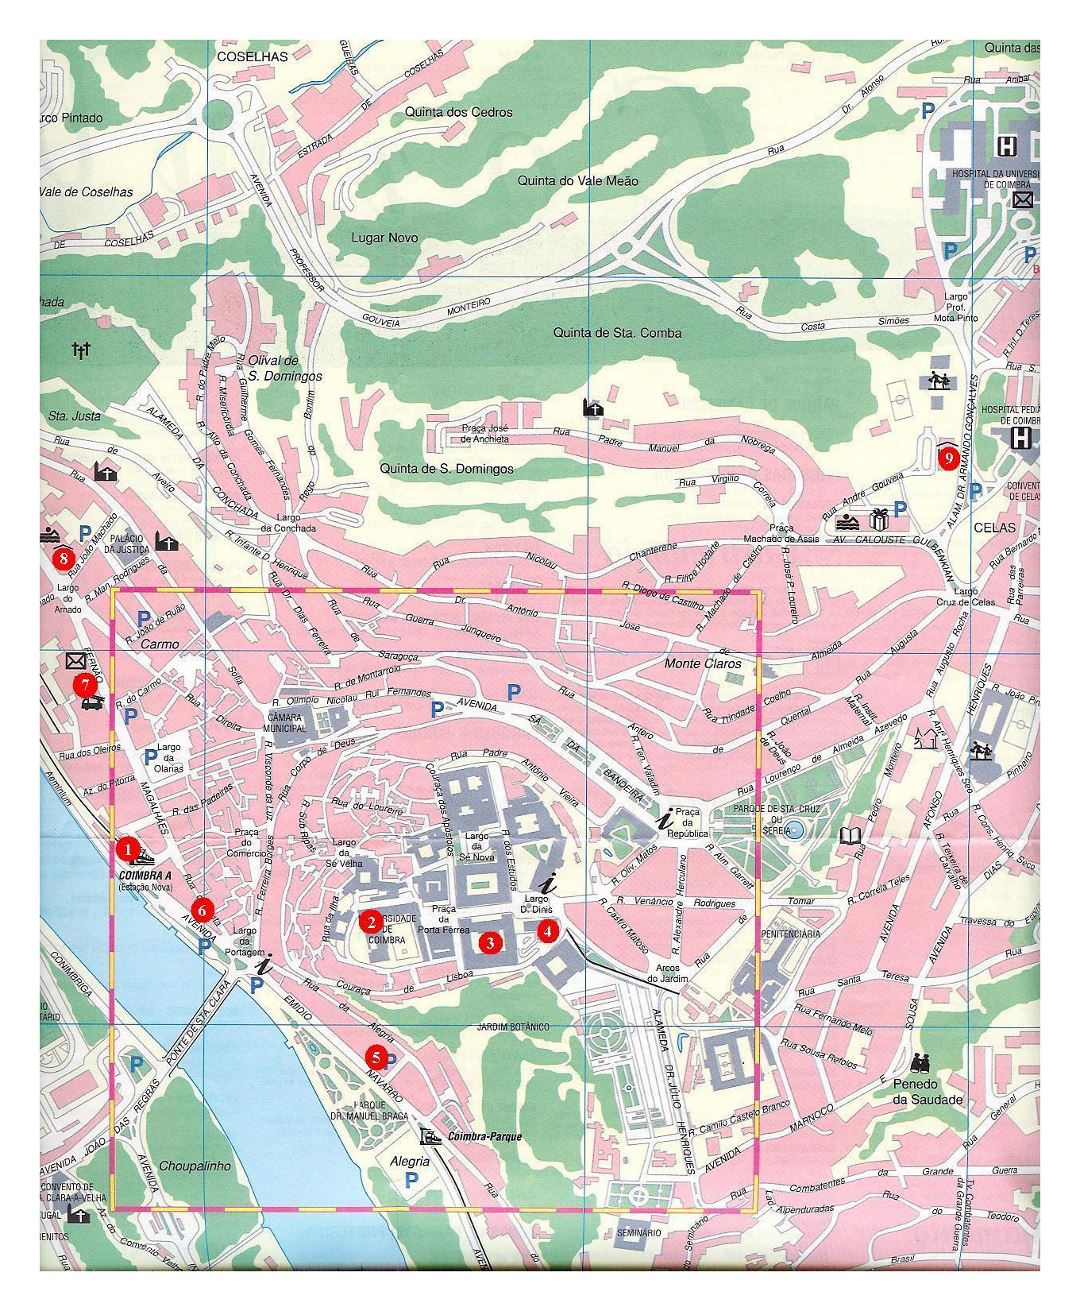 Большая туристическая карта города Коимбра